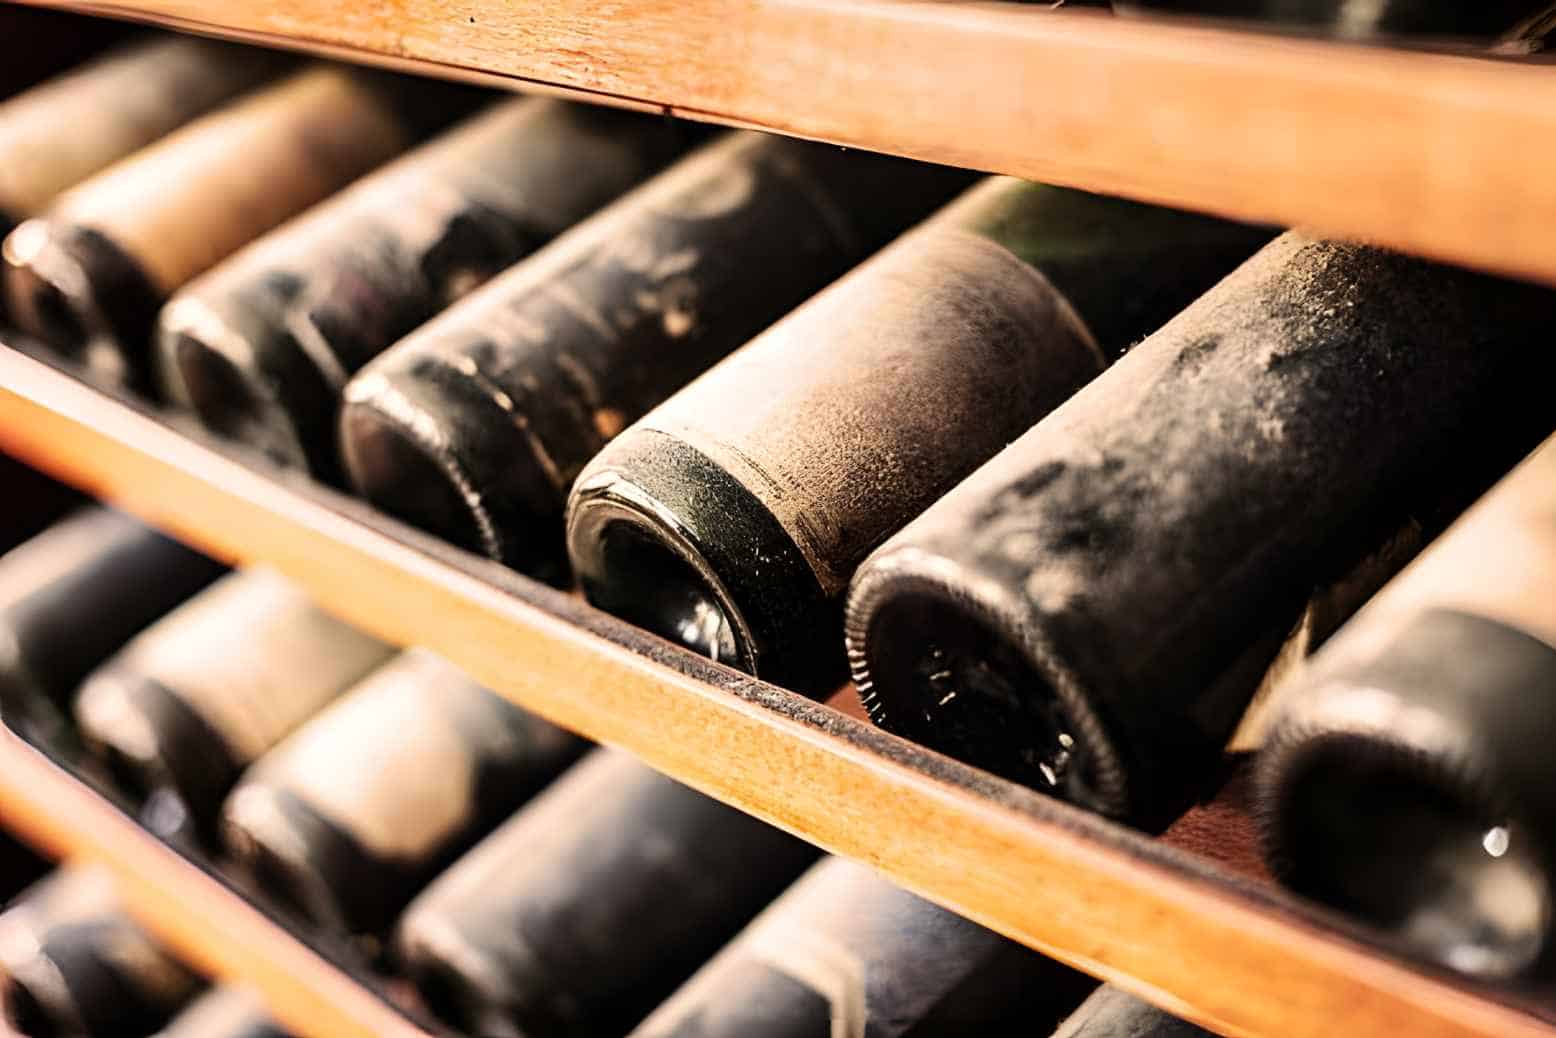 12 Fun Ways to Use Old Wine